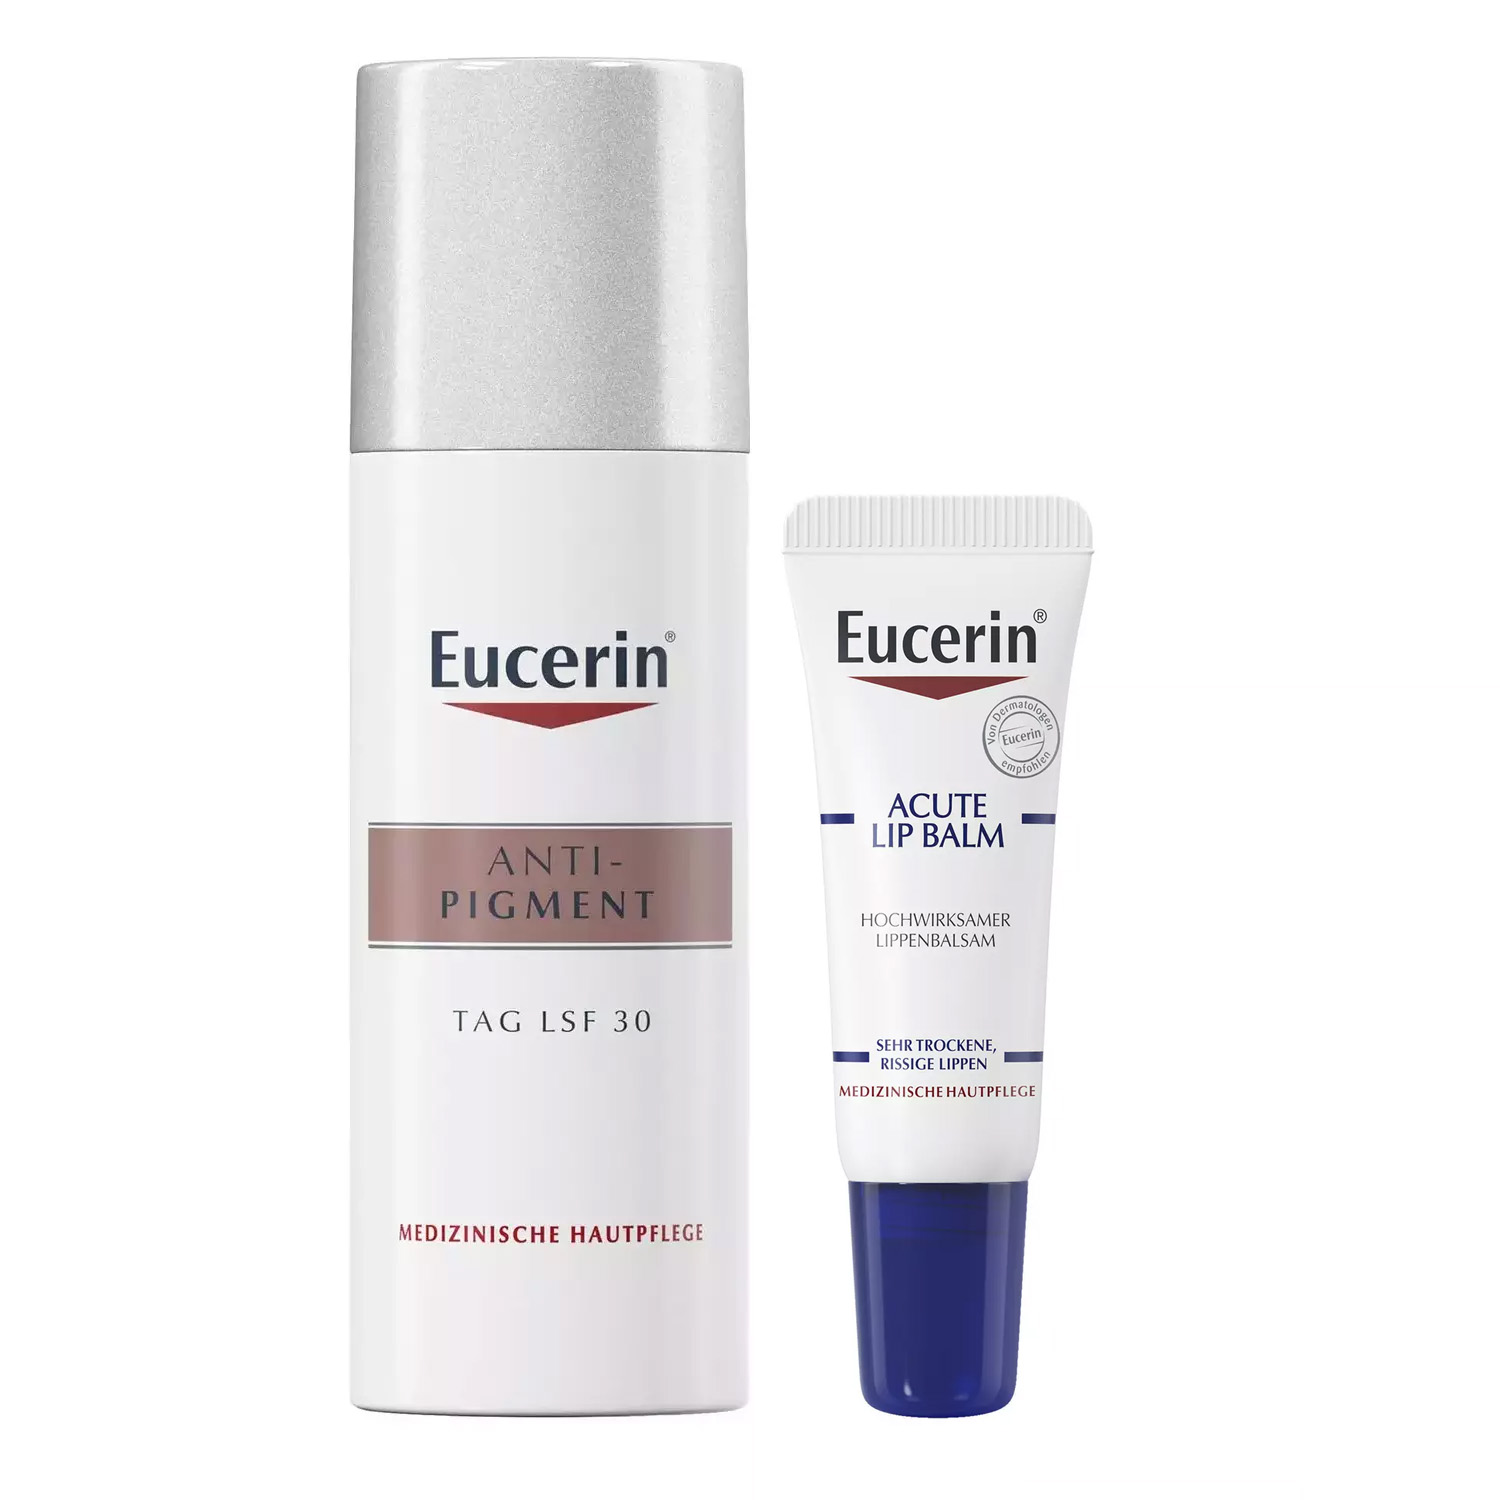 Eucerin Набор для ухода за кожей: бальзам для губ, 10 мл + крем дневной SPF30+, 50 мл (Eucerin, Anti-Pigment) eucerin успокаивающий и увлажняющий бальзам для губ для взрослых и детей 10 мл eucerin urearepair